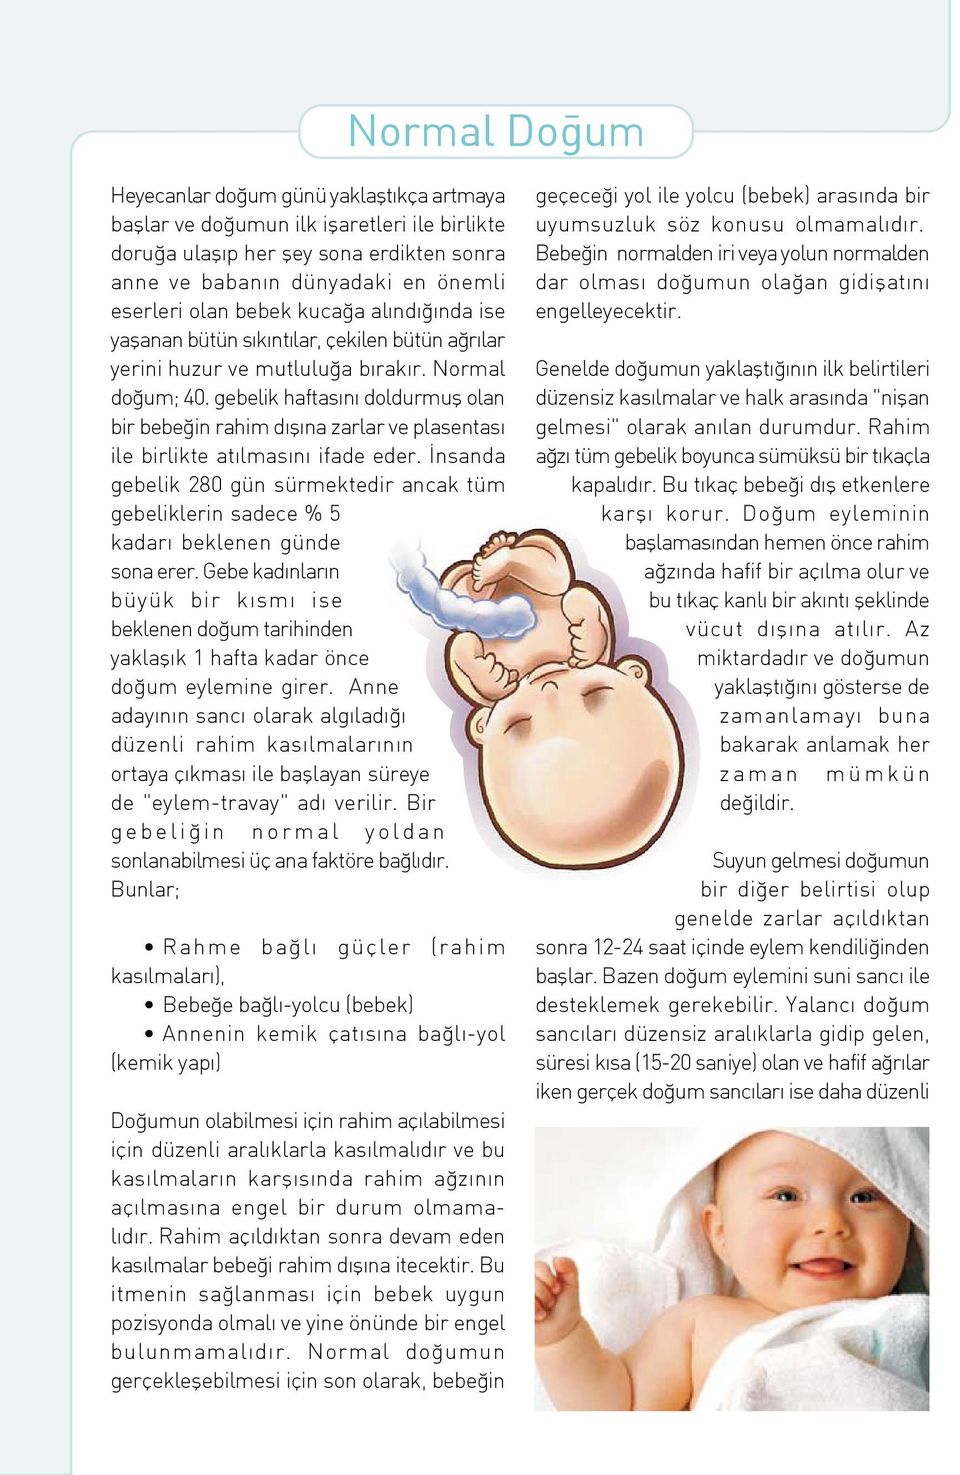 gebelik haftas n doldurmufl olan bir bebe in rahim d fl na zarlar ve plasentas ile birlikte at lmas n ifade eder.